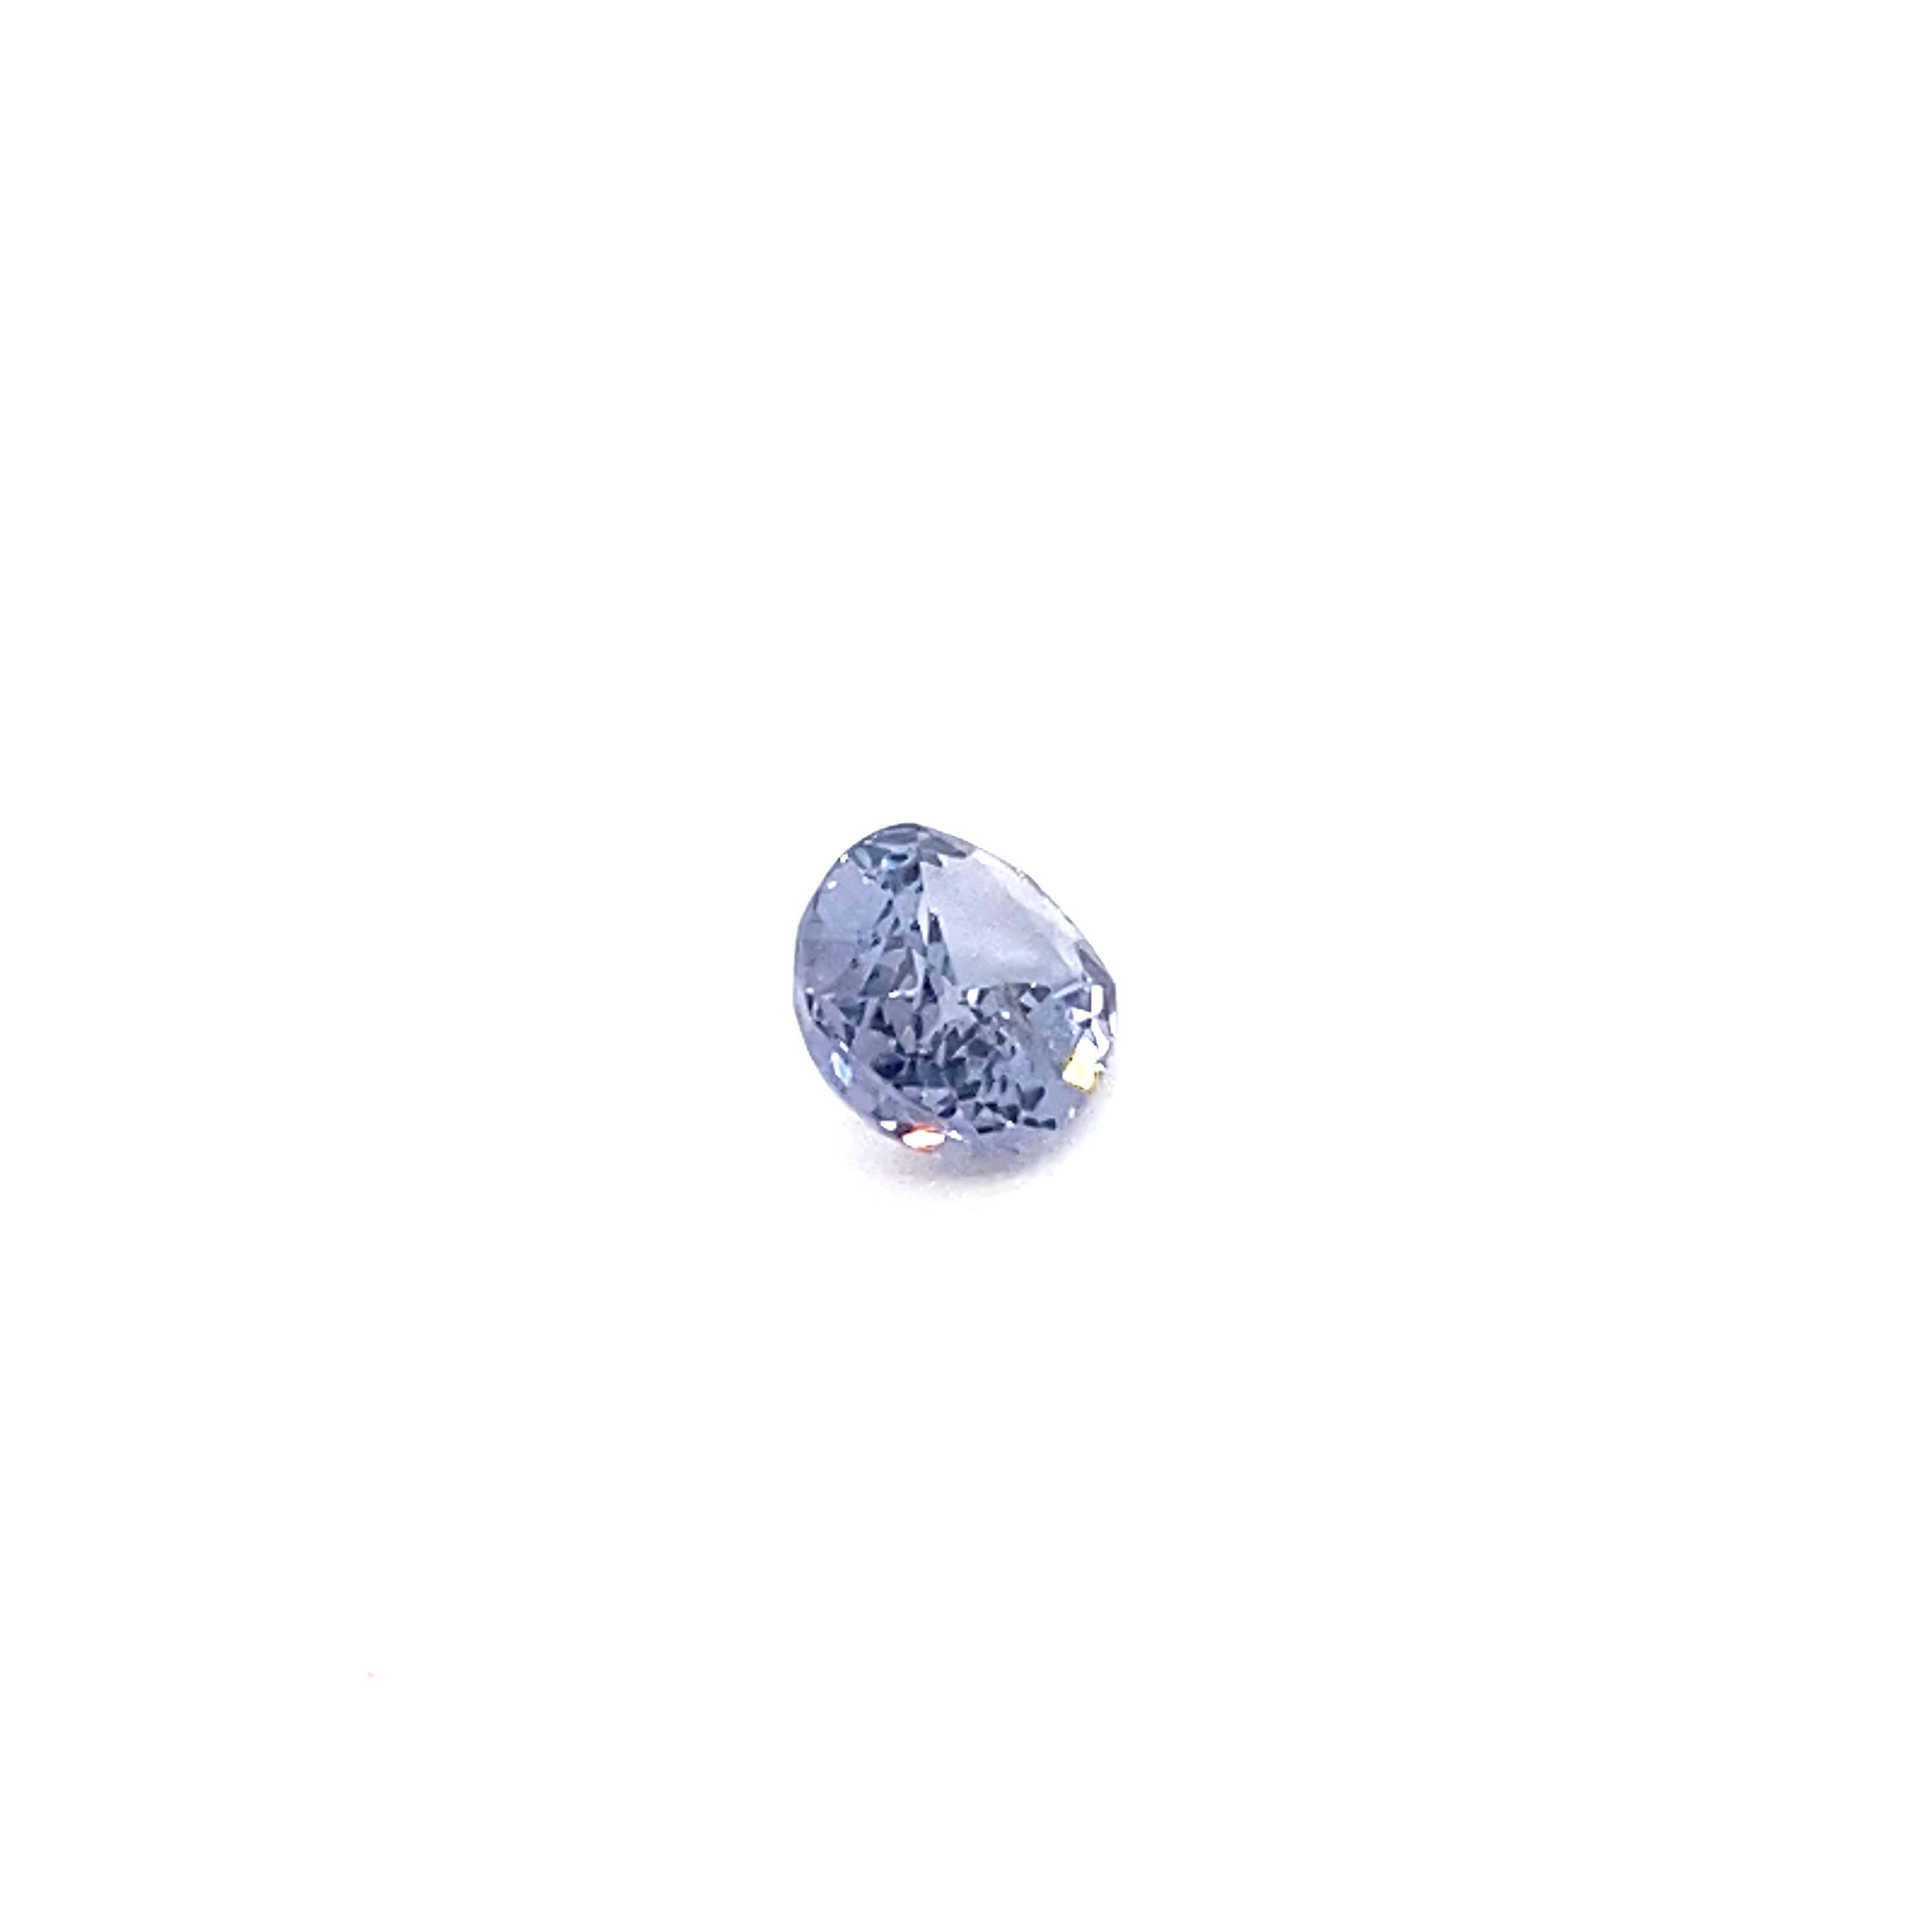 1.6 Carat Oval Shape Natural Violet Spinel Loose Gemstone For Sale 7